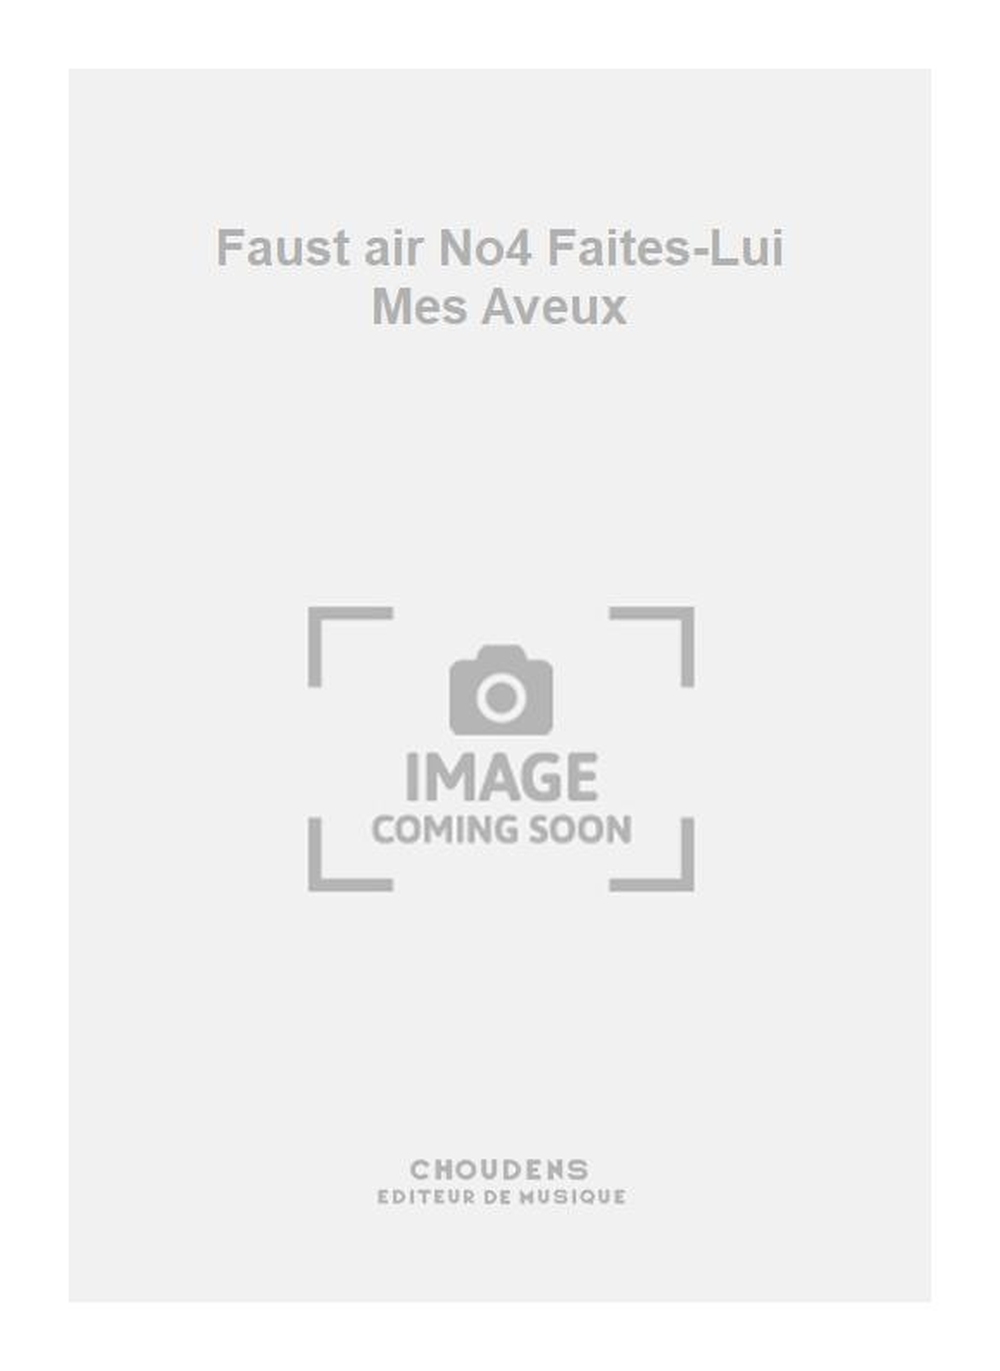 Charles Gounod: Faust air No4 Faites-Lui Mes Aveux